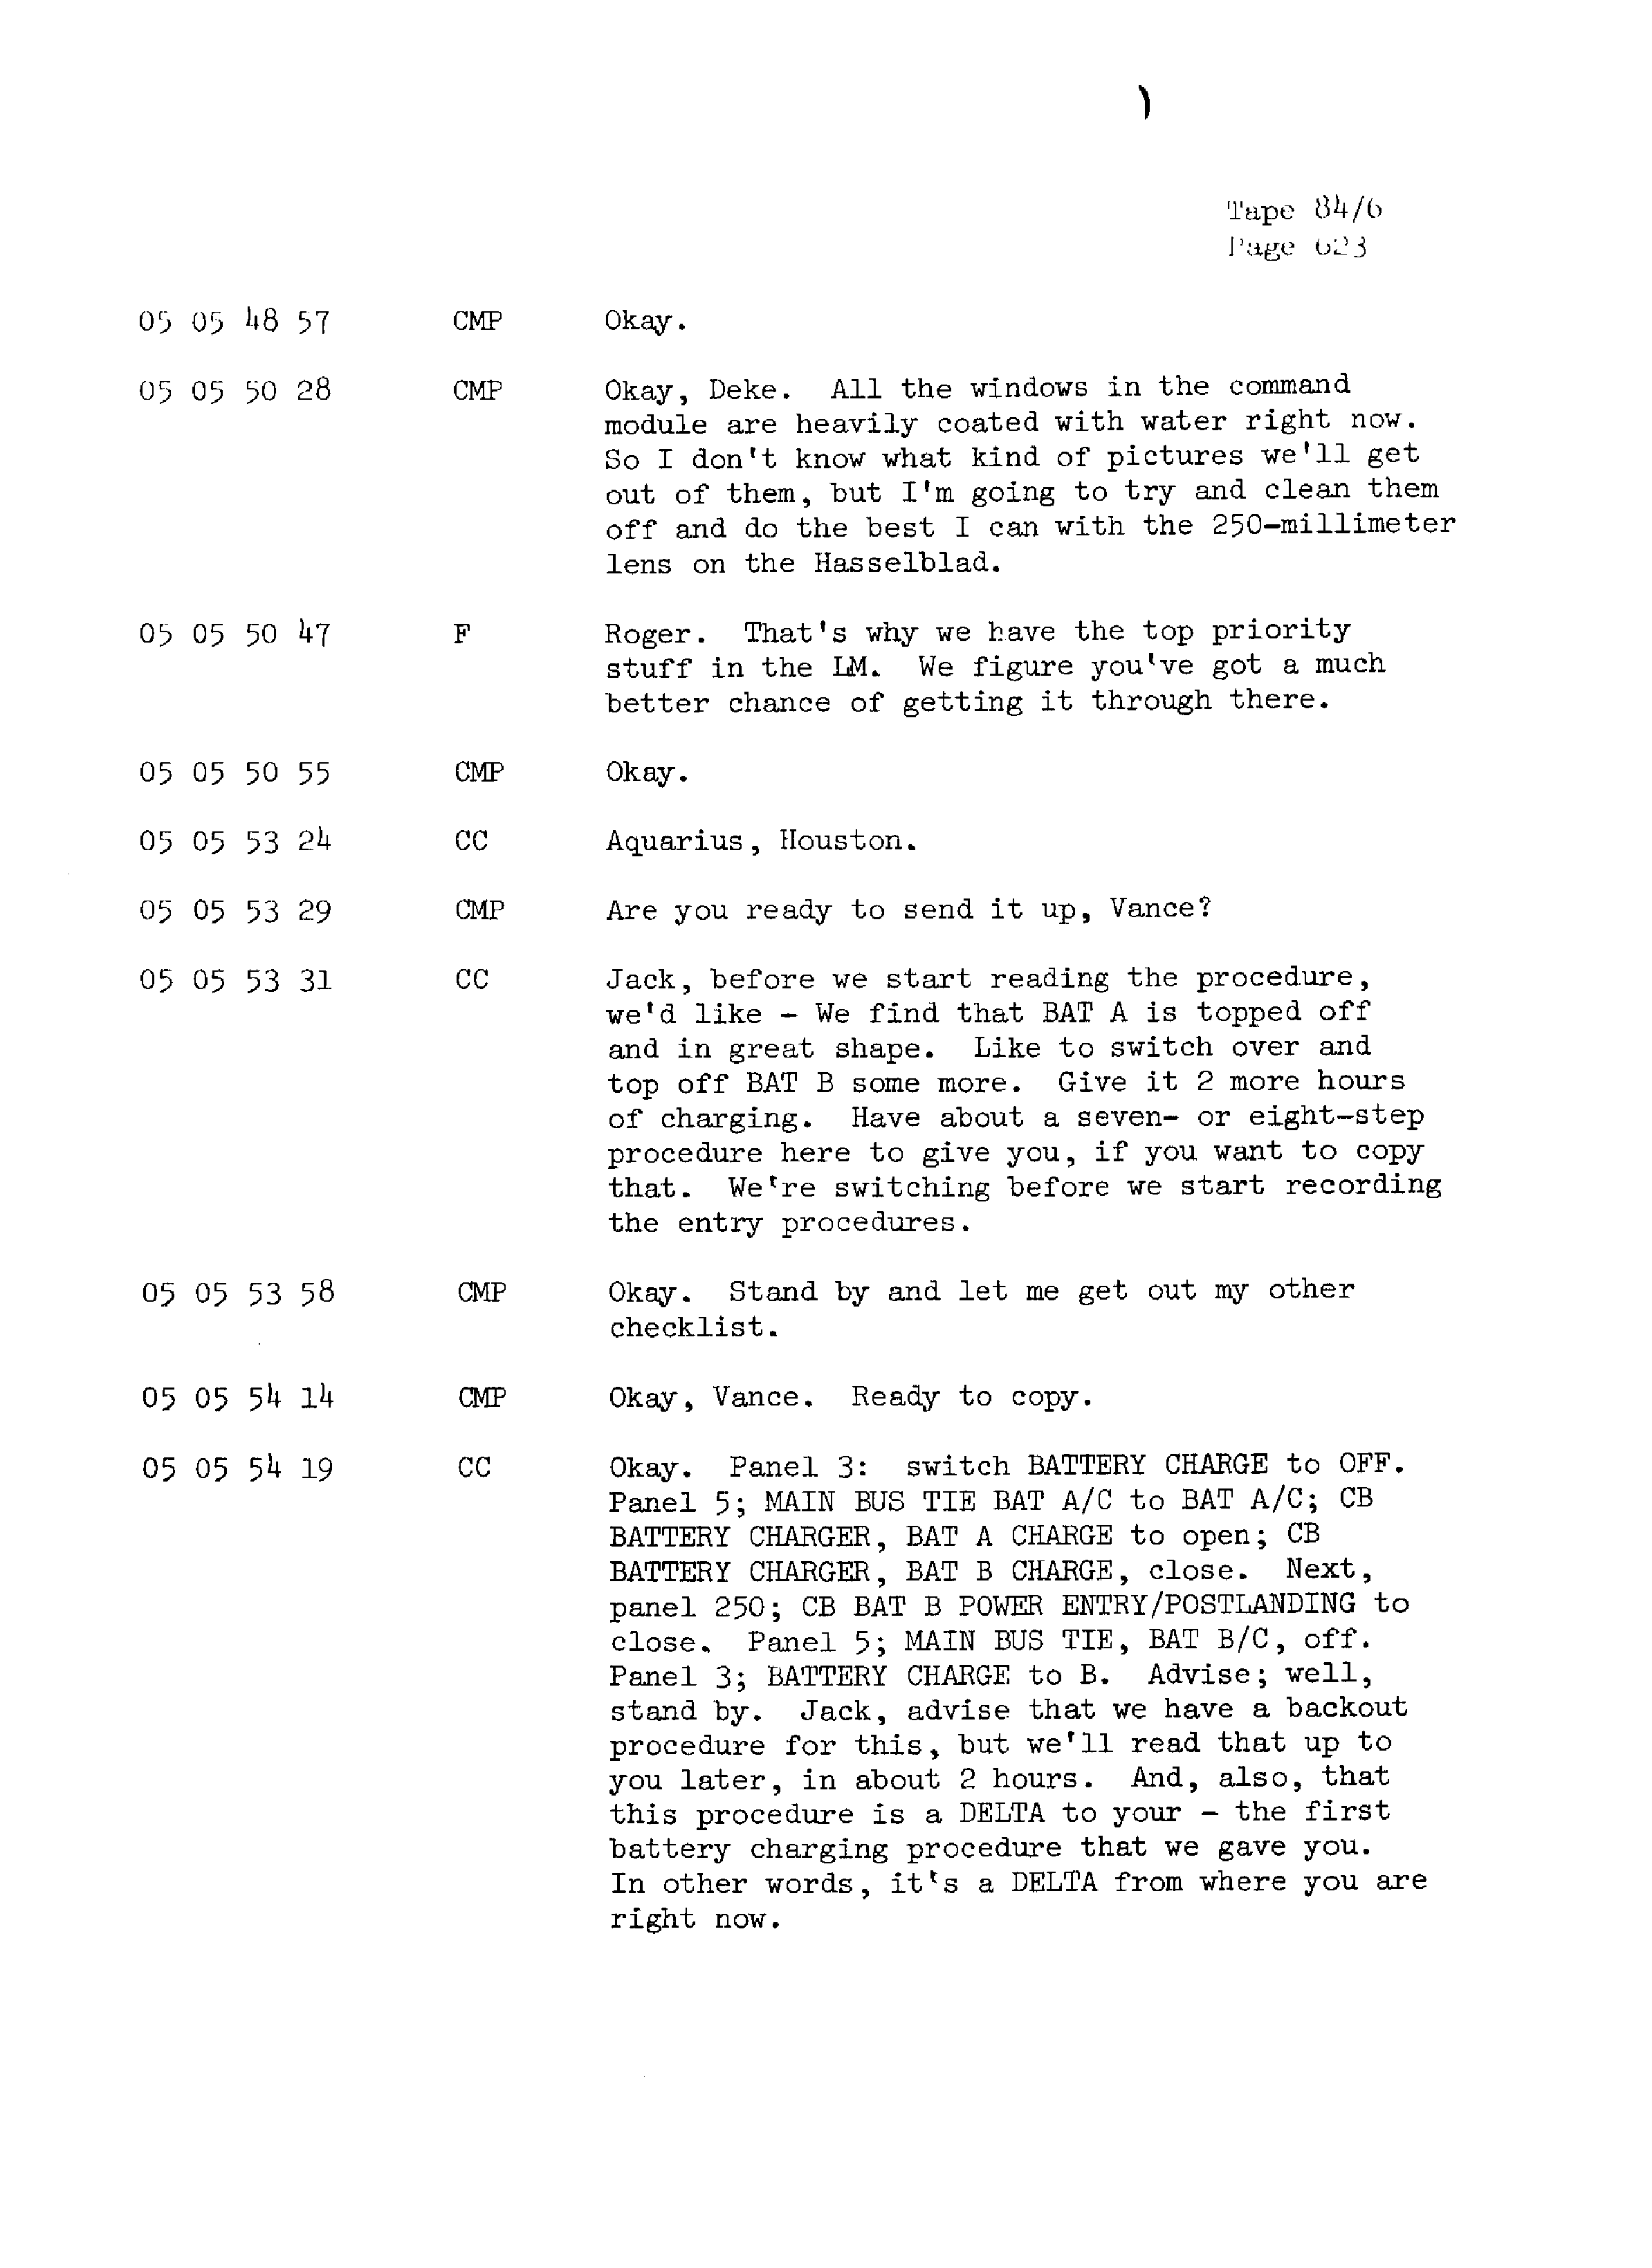 Page 630 of Apollo 13’s original transcript